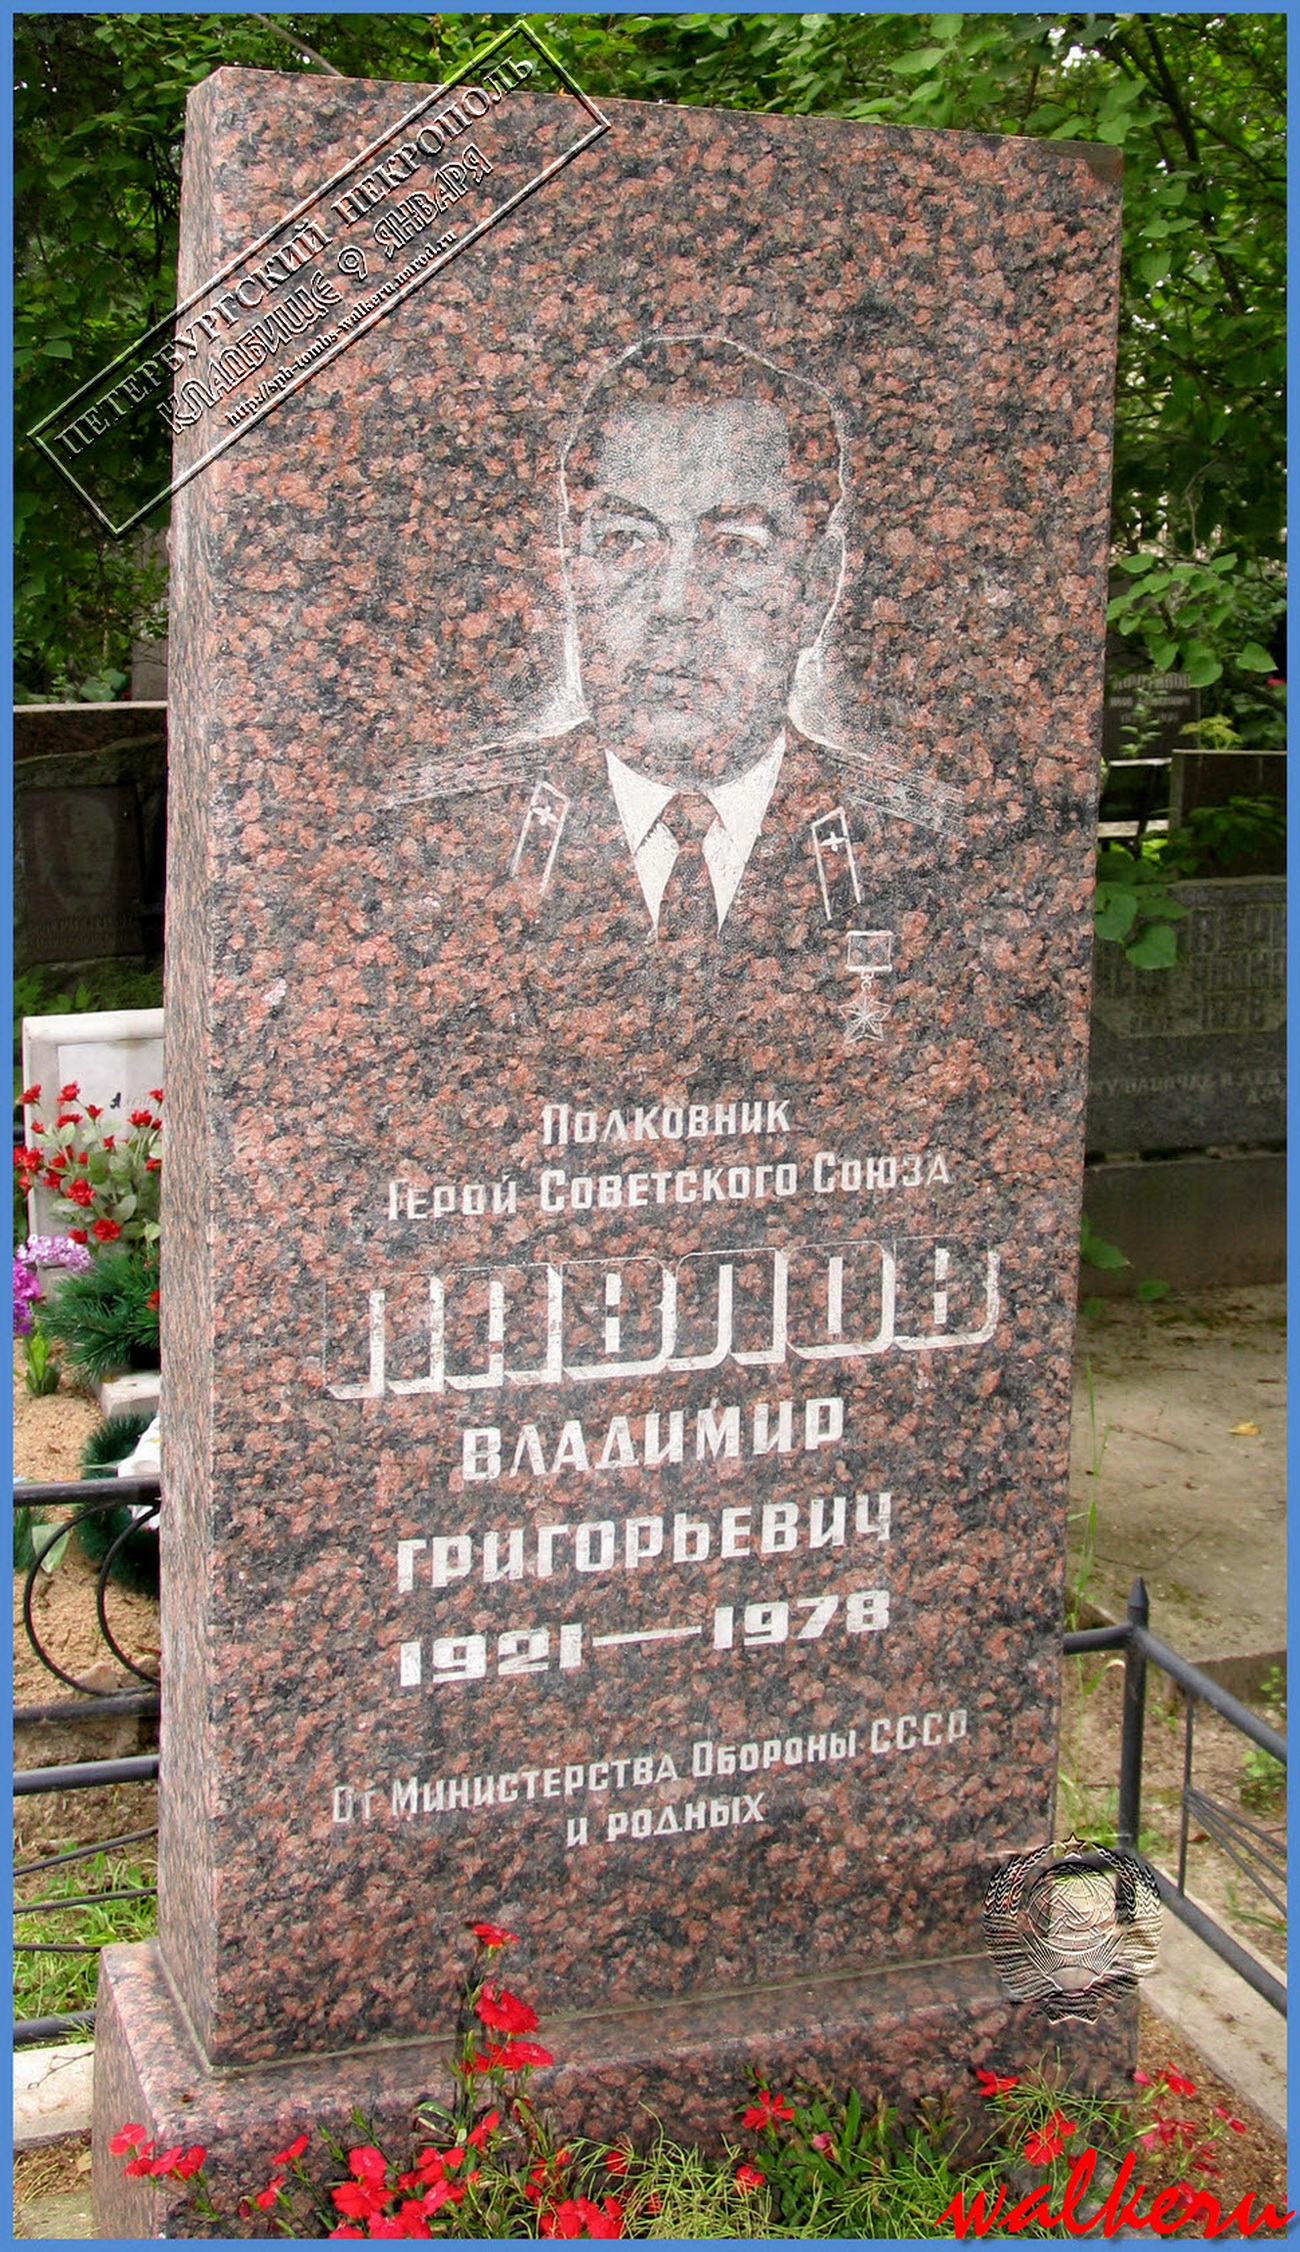 Павлов Владимир Григорьевич